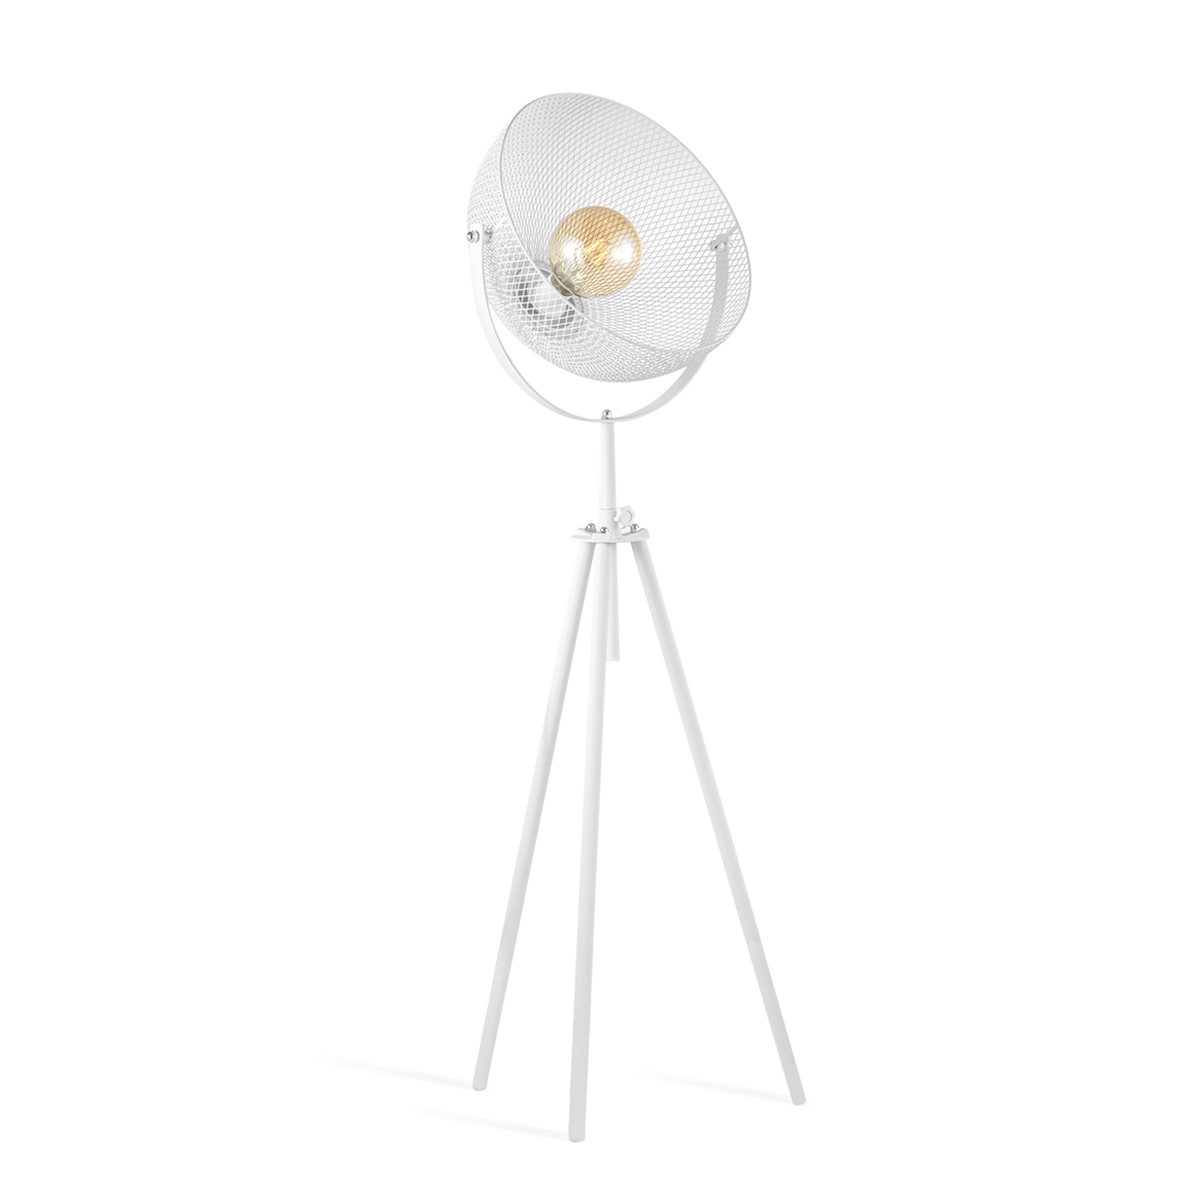 Tangla lighting - TLT1098-01SW - LED table lamp 1 Light - metal in sand white - tripod - standard - E27